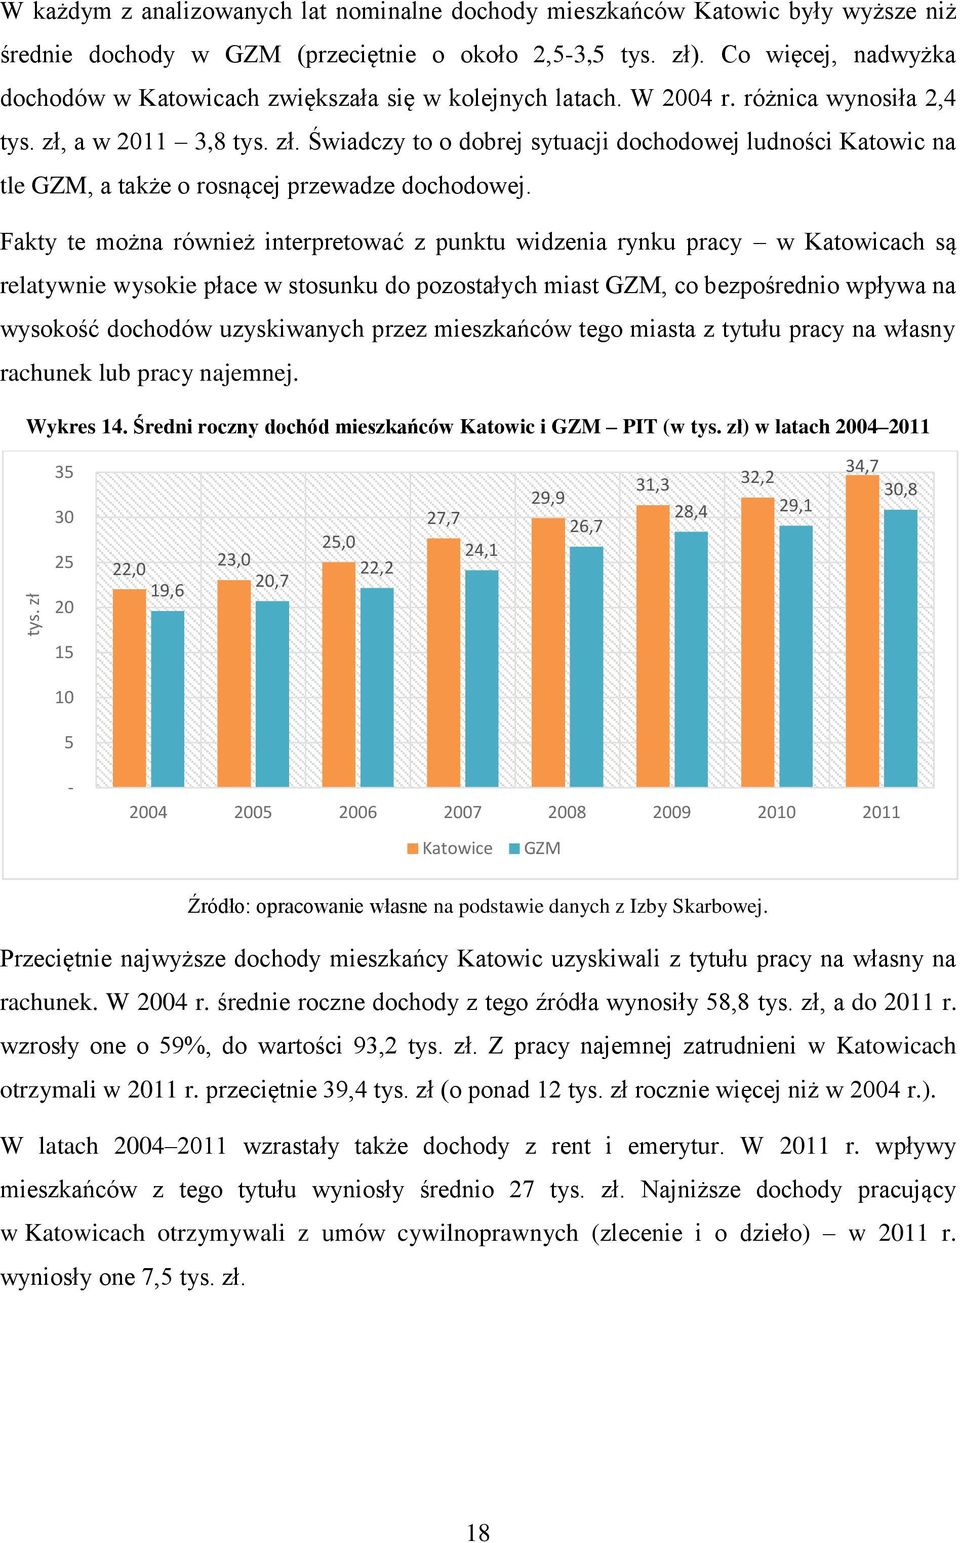 a w 2011 3,8 tys. zł. Świadczy to o dobrej sytuacji dochodowej ludności Katowic na tle GZM, a także o rosnącej przewadze dochodowej.